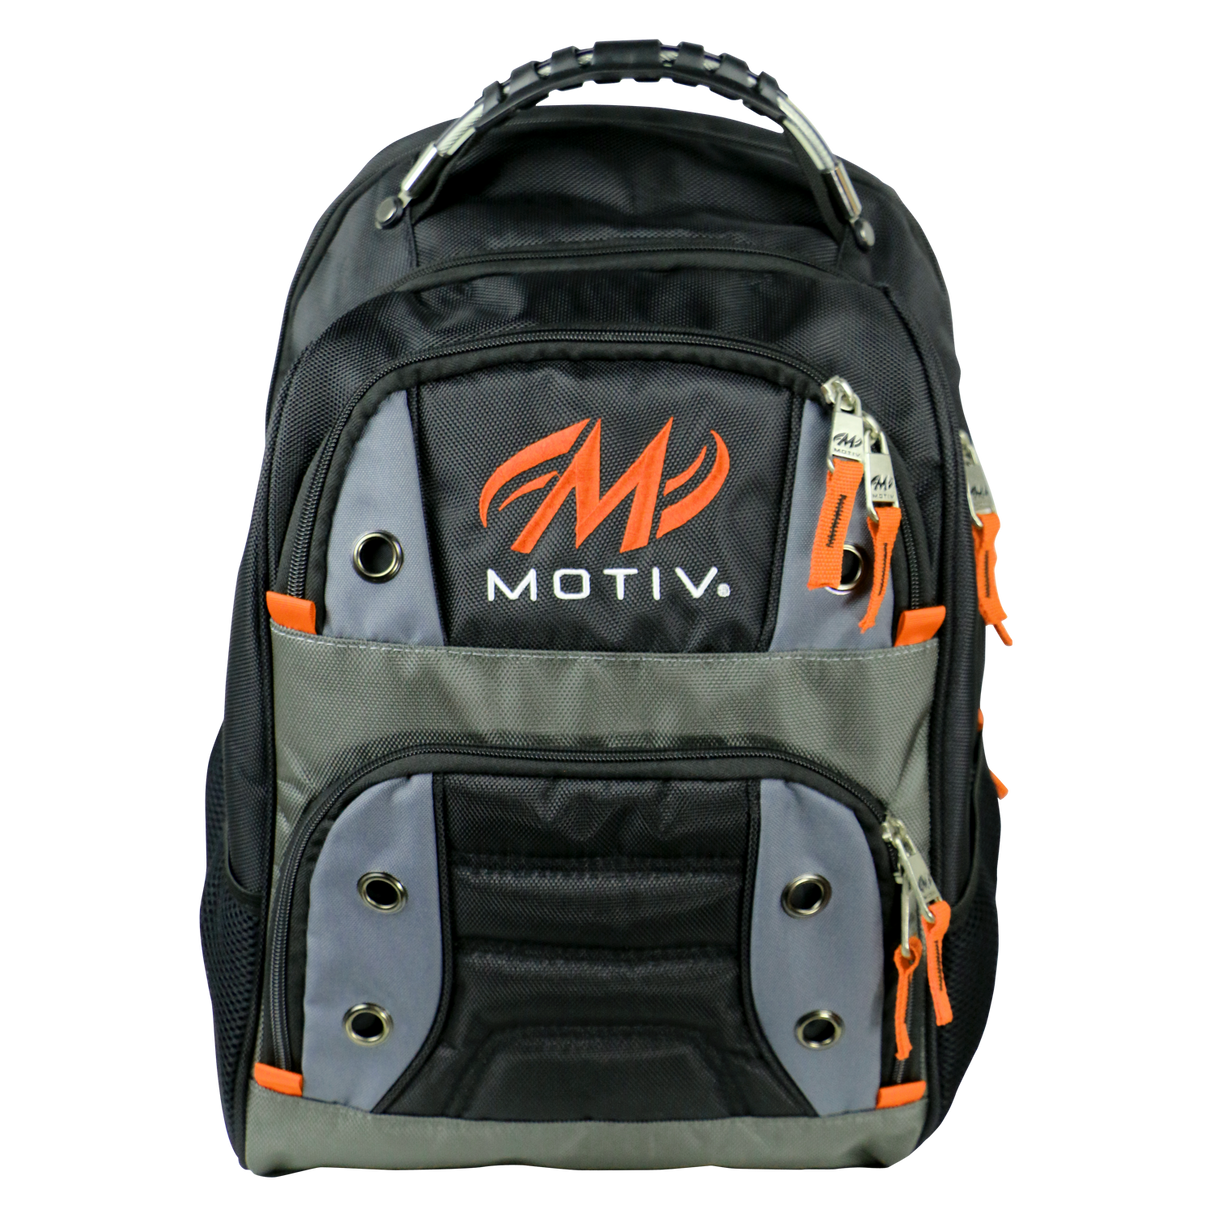 Motiv Intrepid Backpack Black/Orange suitcase league tournament play sale discount coupon online pba tour